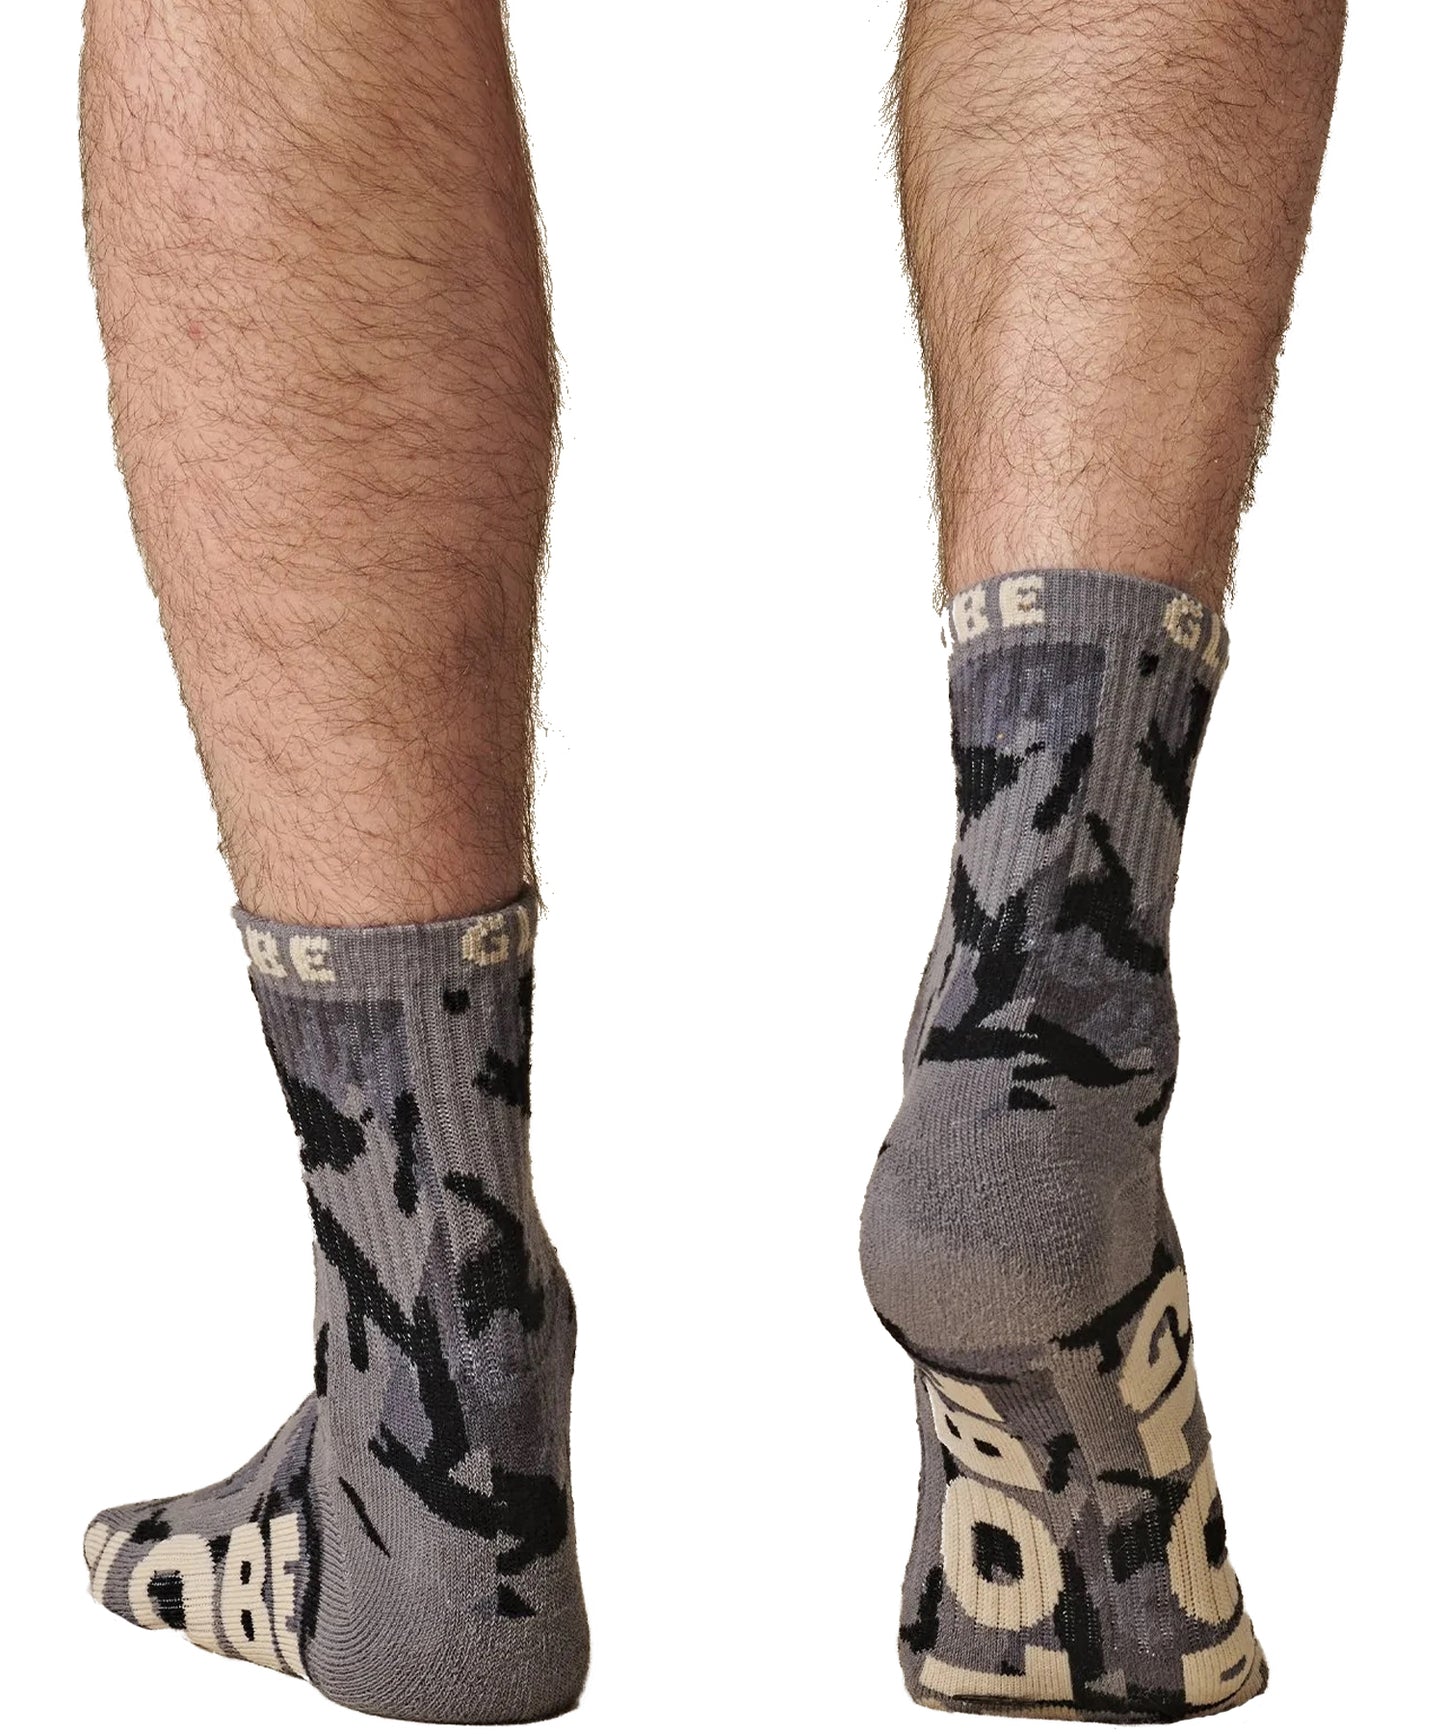 Globe-Mens-Eco-Camo-Crew-Socks-pack-de-tres-calcetines-color camuflaje-75% algodón, 22% nylon, 3% elastano y algodón peinado.